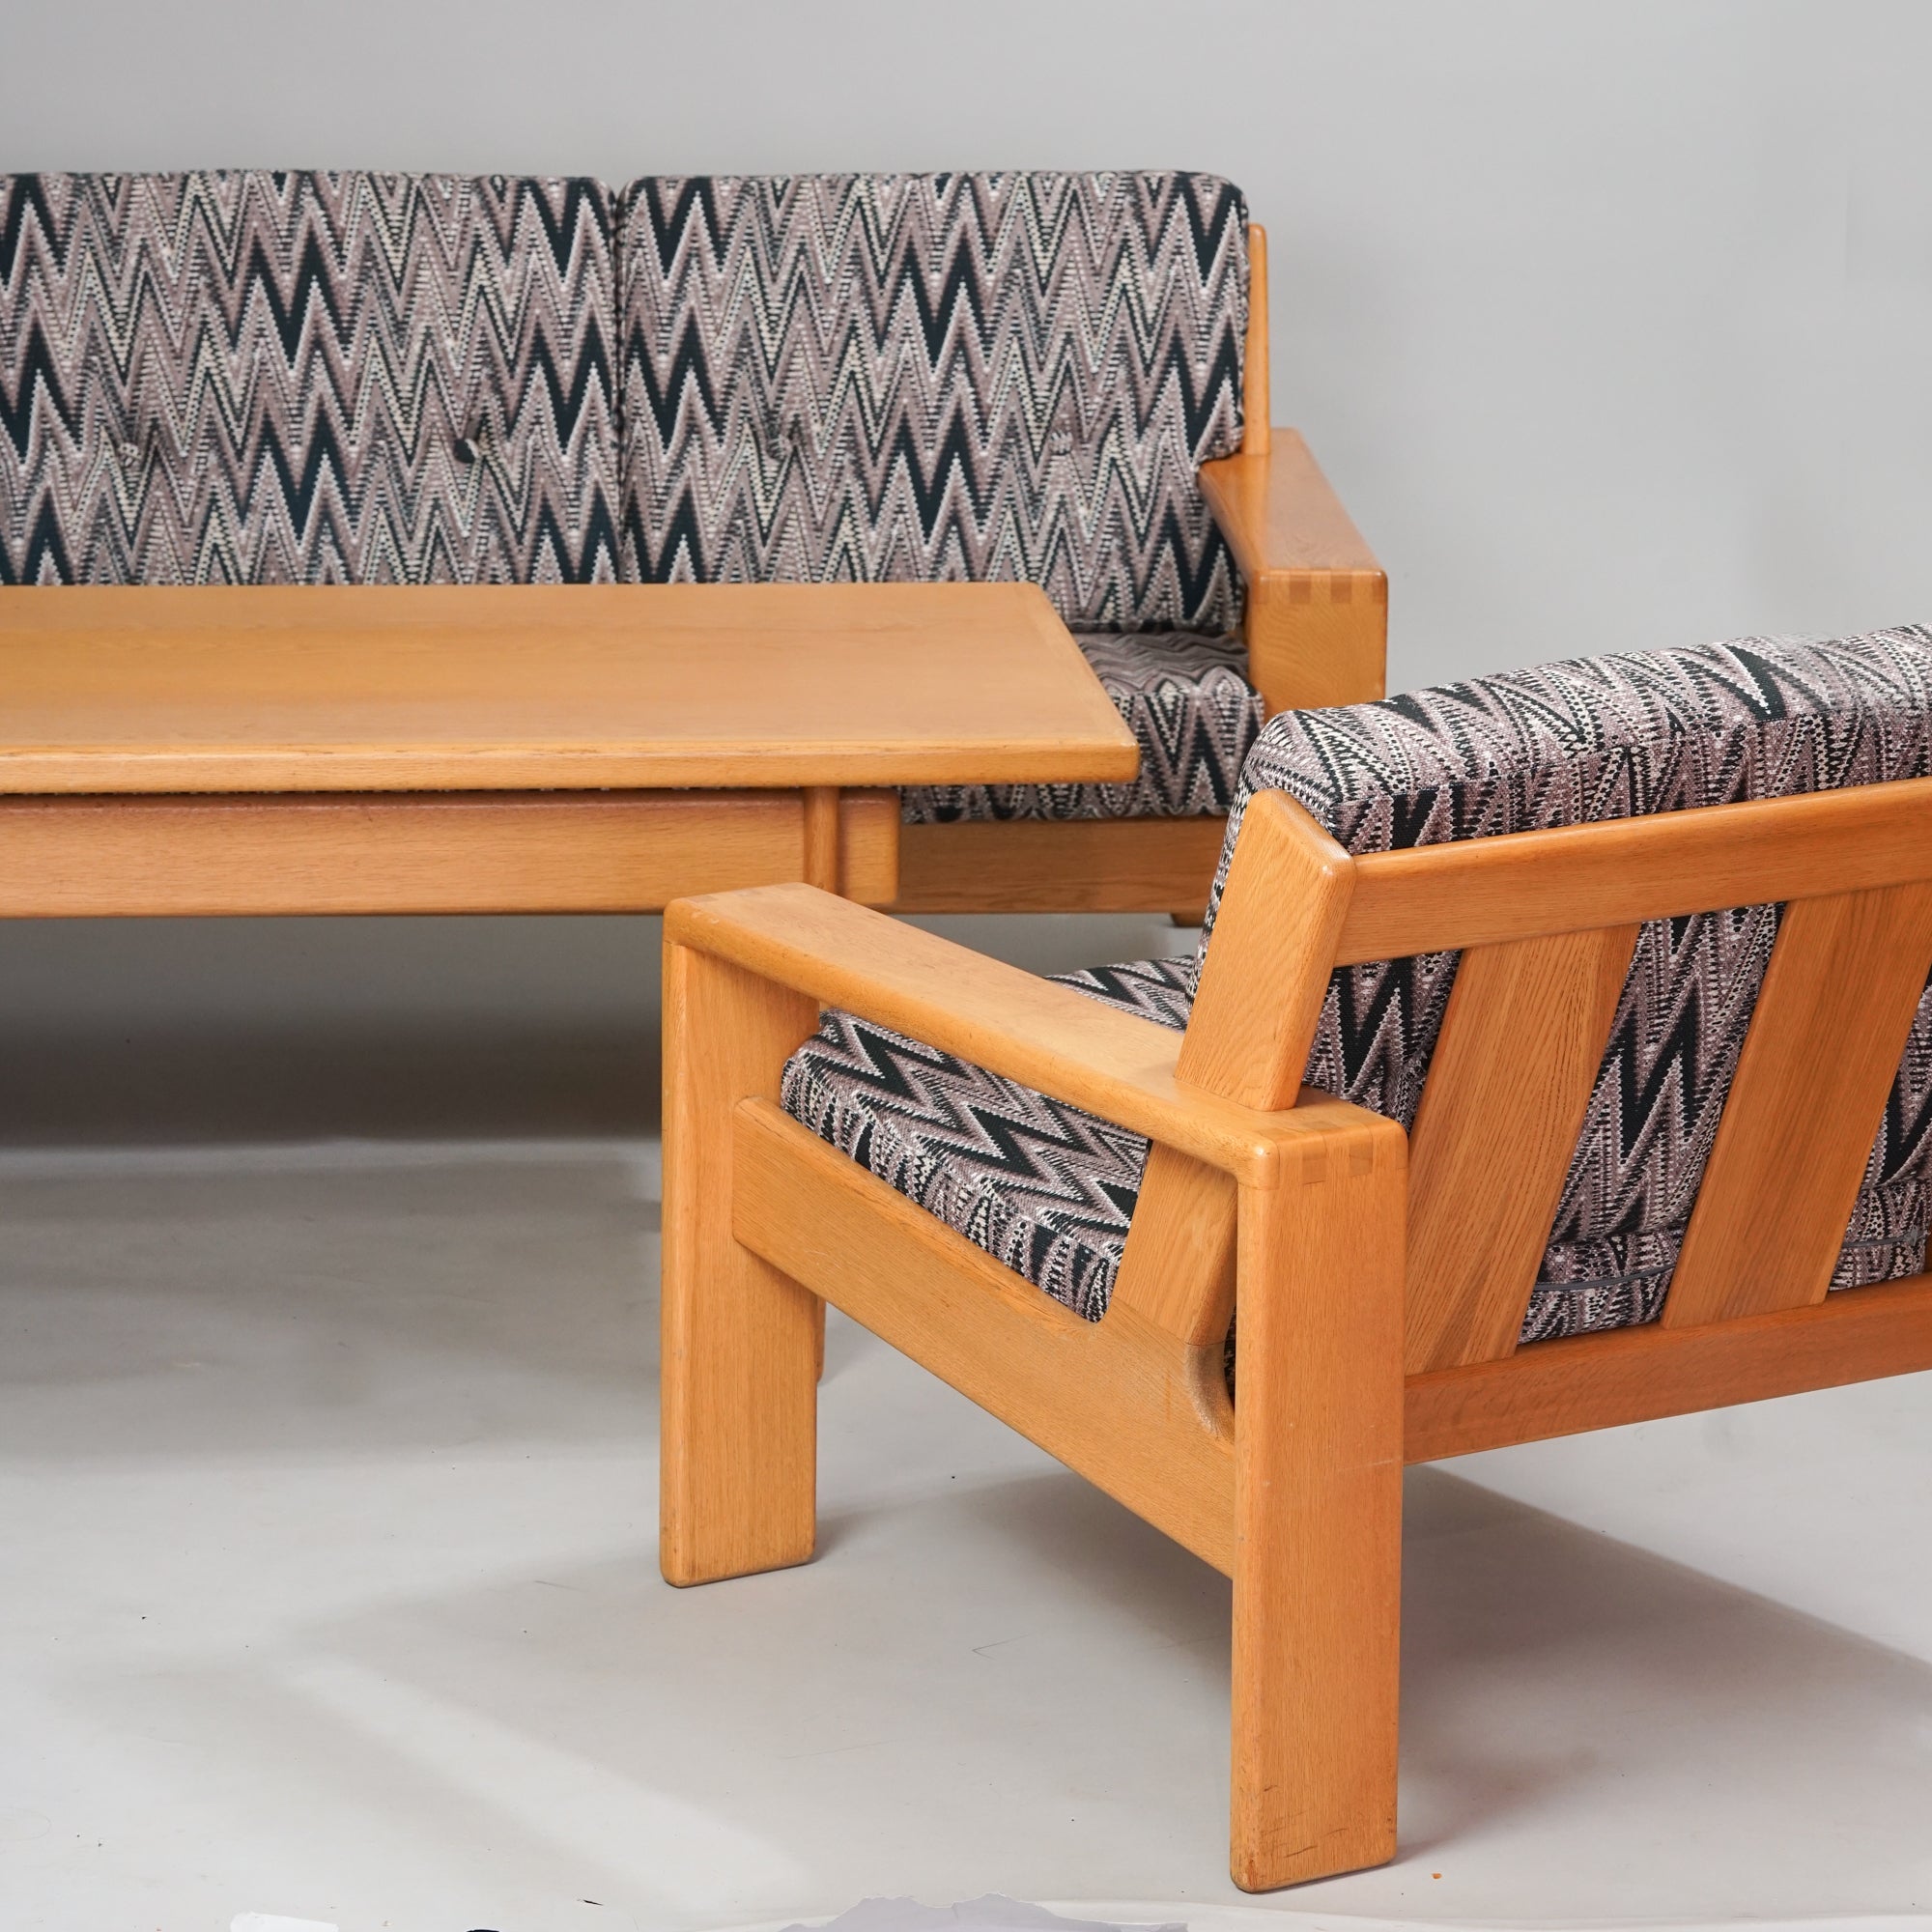 Tammesta tehty sohvapöytä, jonka vieressä on sohva ja kaksi nojatuolia, joiden rungot on tammea. Sohvan ja nojatuolien verhoilu zigzag-kuviointi.